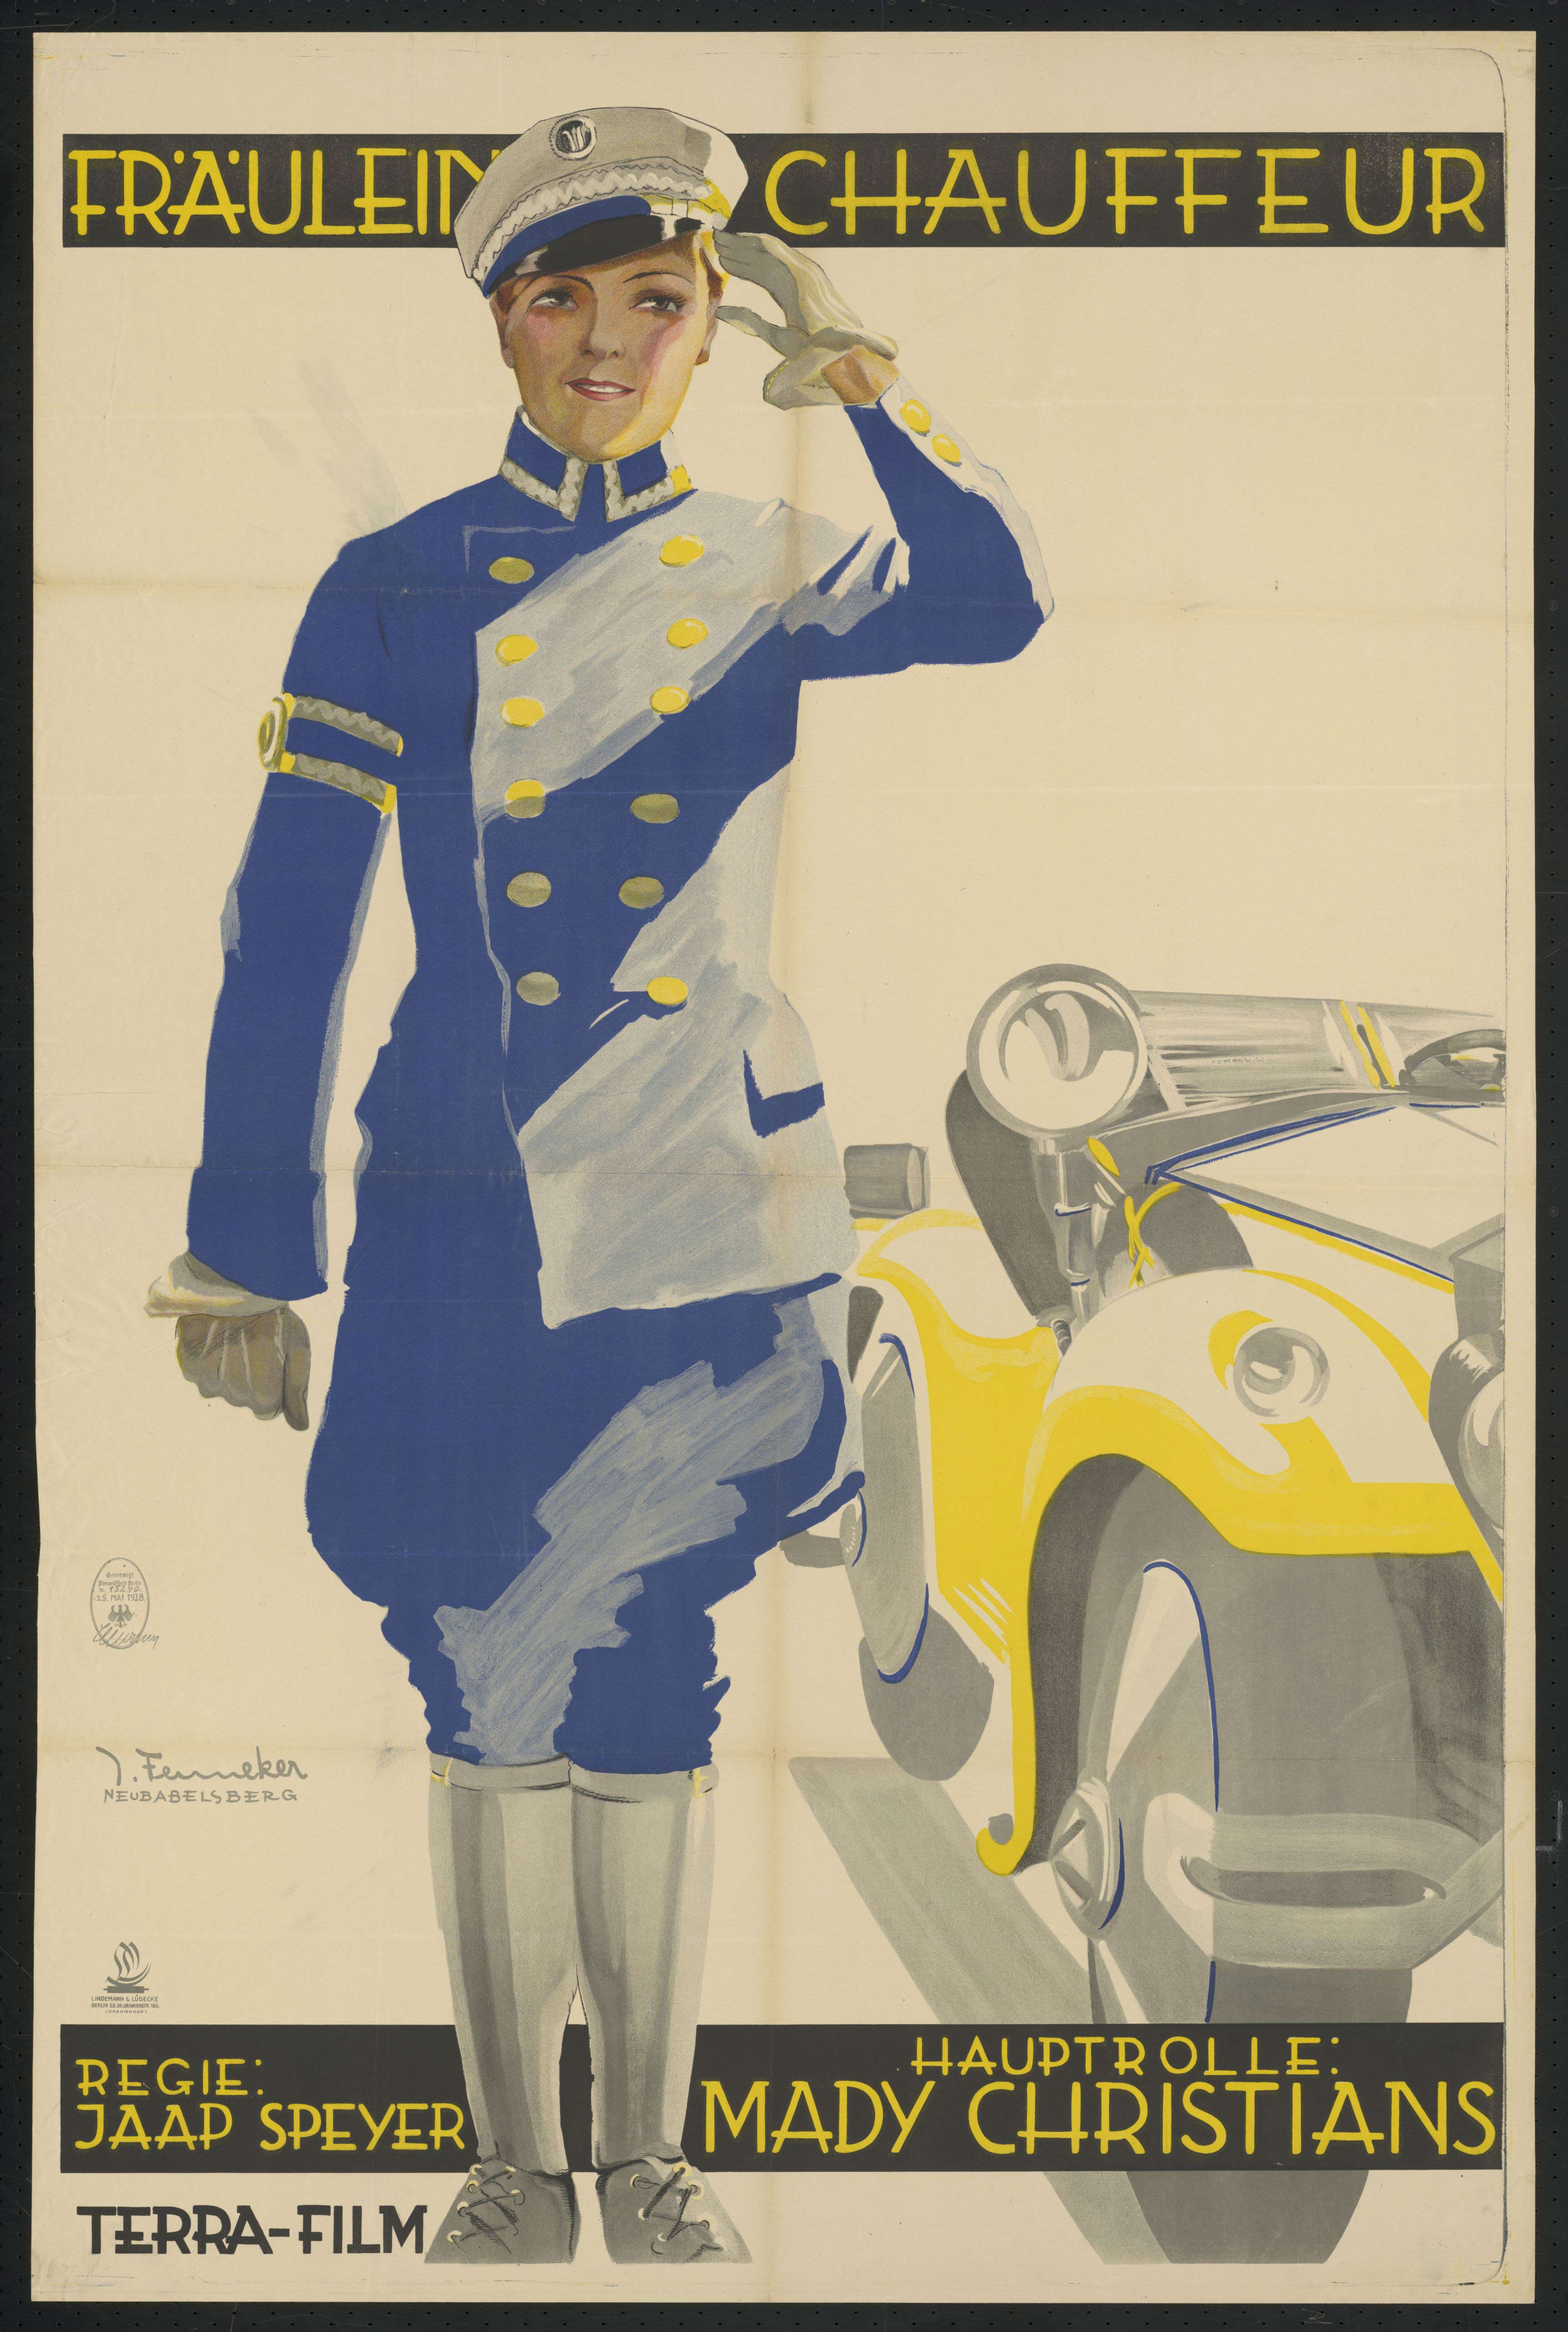 Plakat zu dem Film Fräulein Chauffeur, Deutschland 1928, Regie: Jaap Speyer